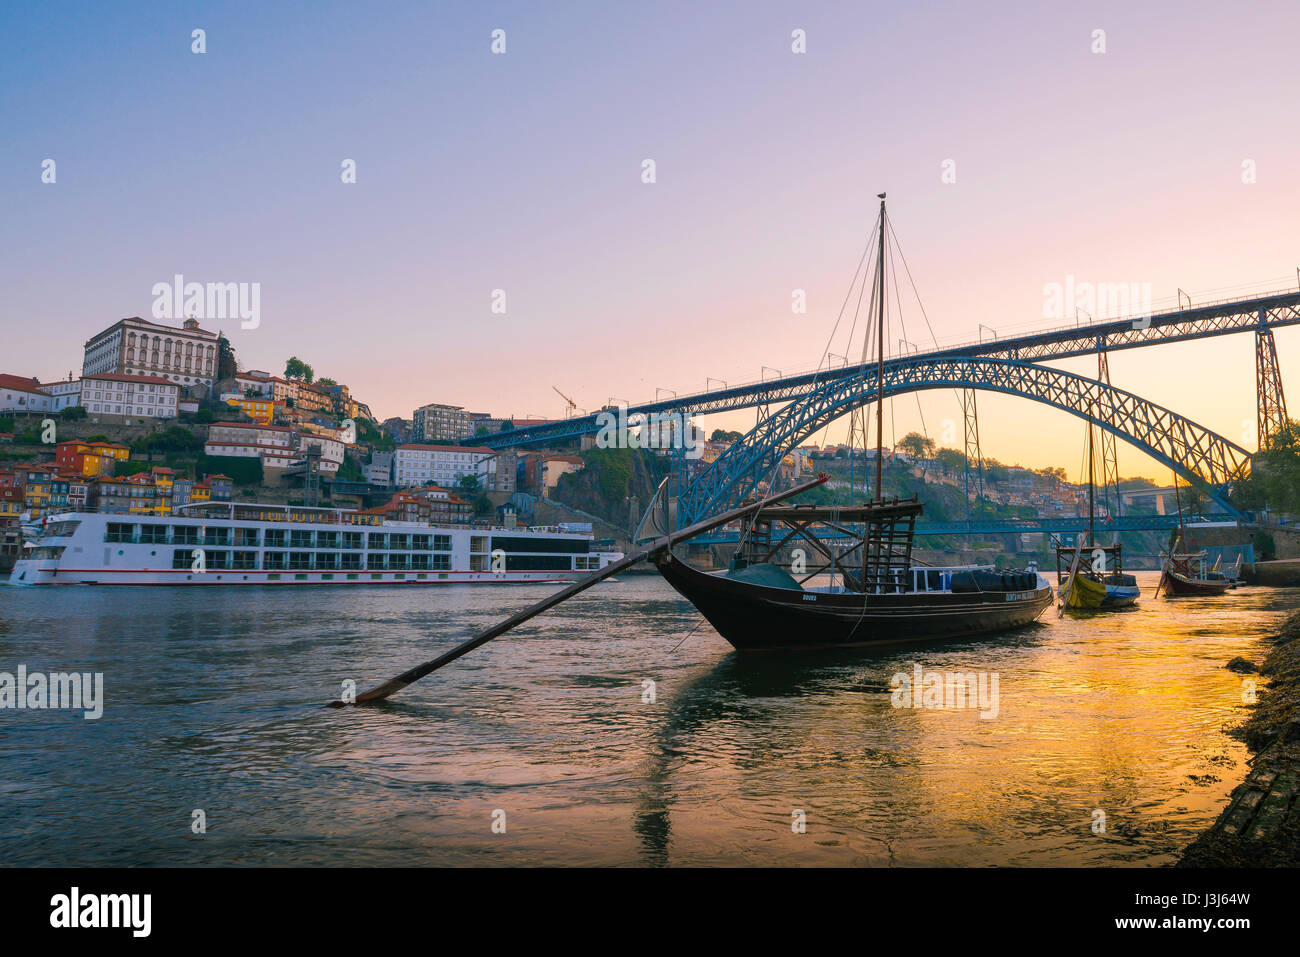 Crucero por Porto Portugal, vista al amanecer de un crucero turístico navegando a lo largo del río Duero en el centro de la ciudad de Oporto, Portugal. Foto de stock